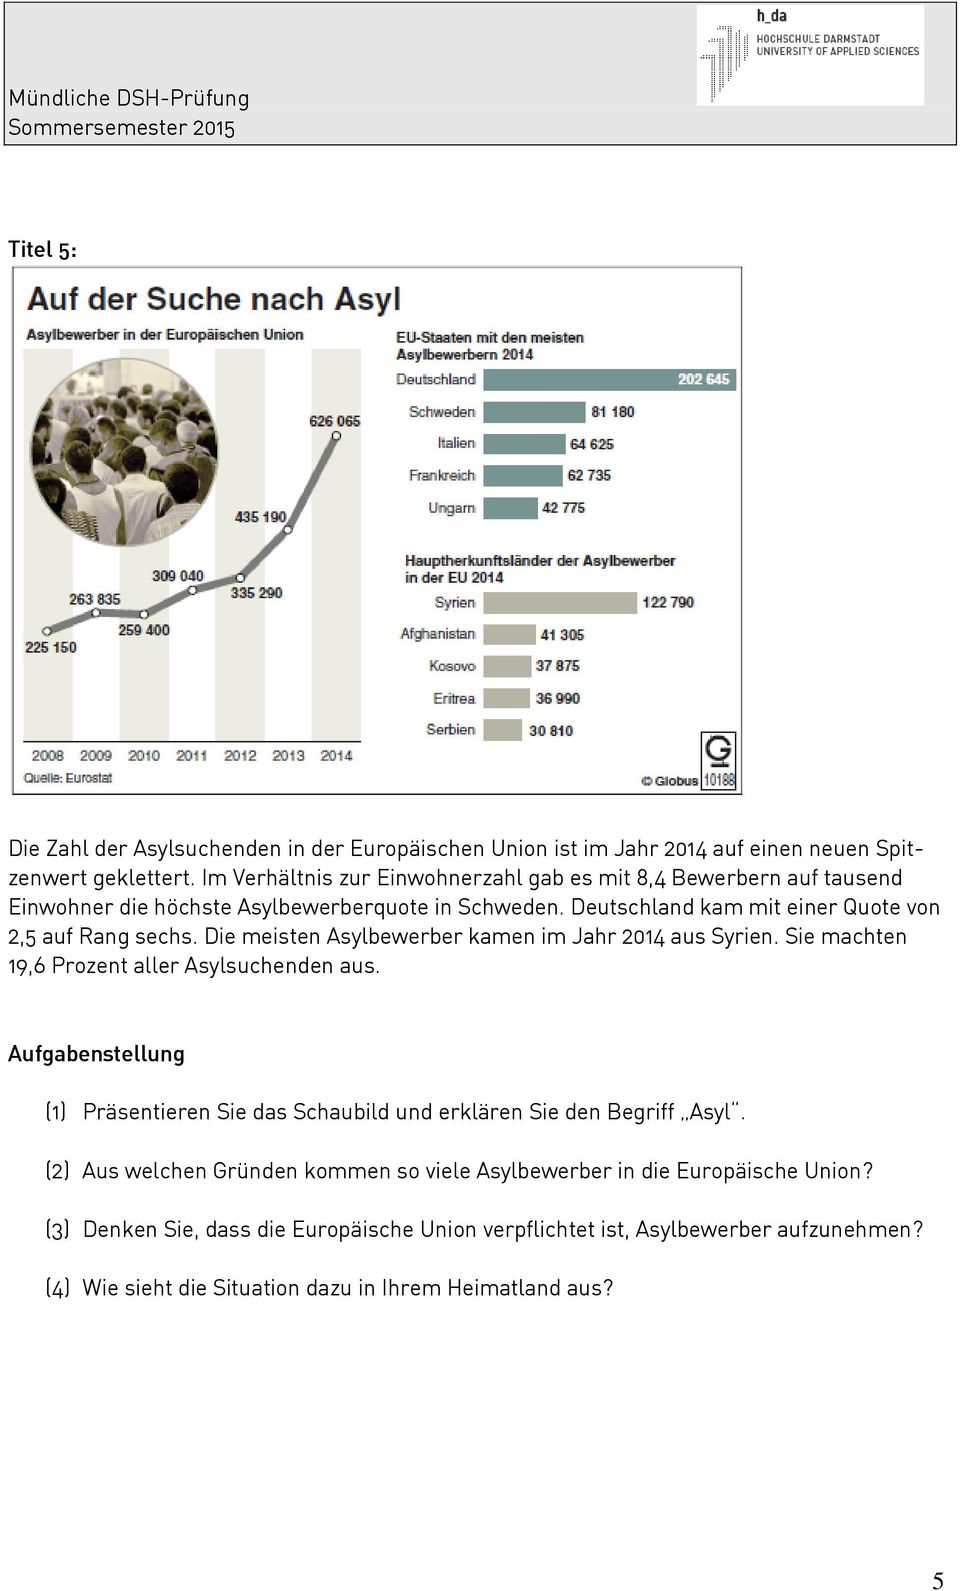 Deutschland kam mit einer Quote von 2,5 auf Rang sechs. Die meisten Asylbewerber kamen im Jahr 2014 aus Syrien. Sie machten 19,6 Prozent aller Asylsuchenden aus.